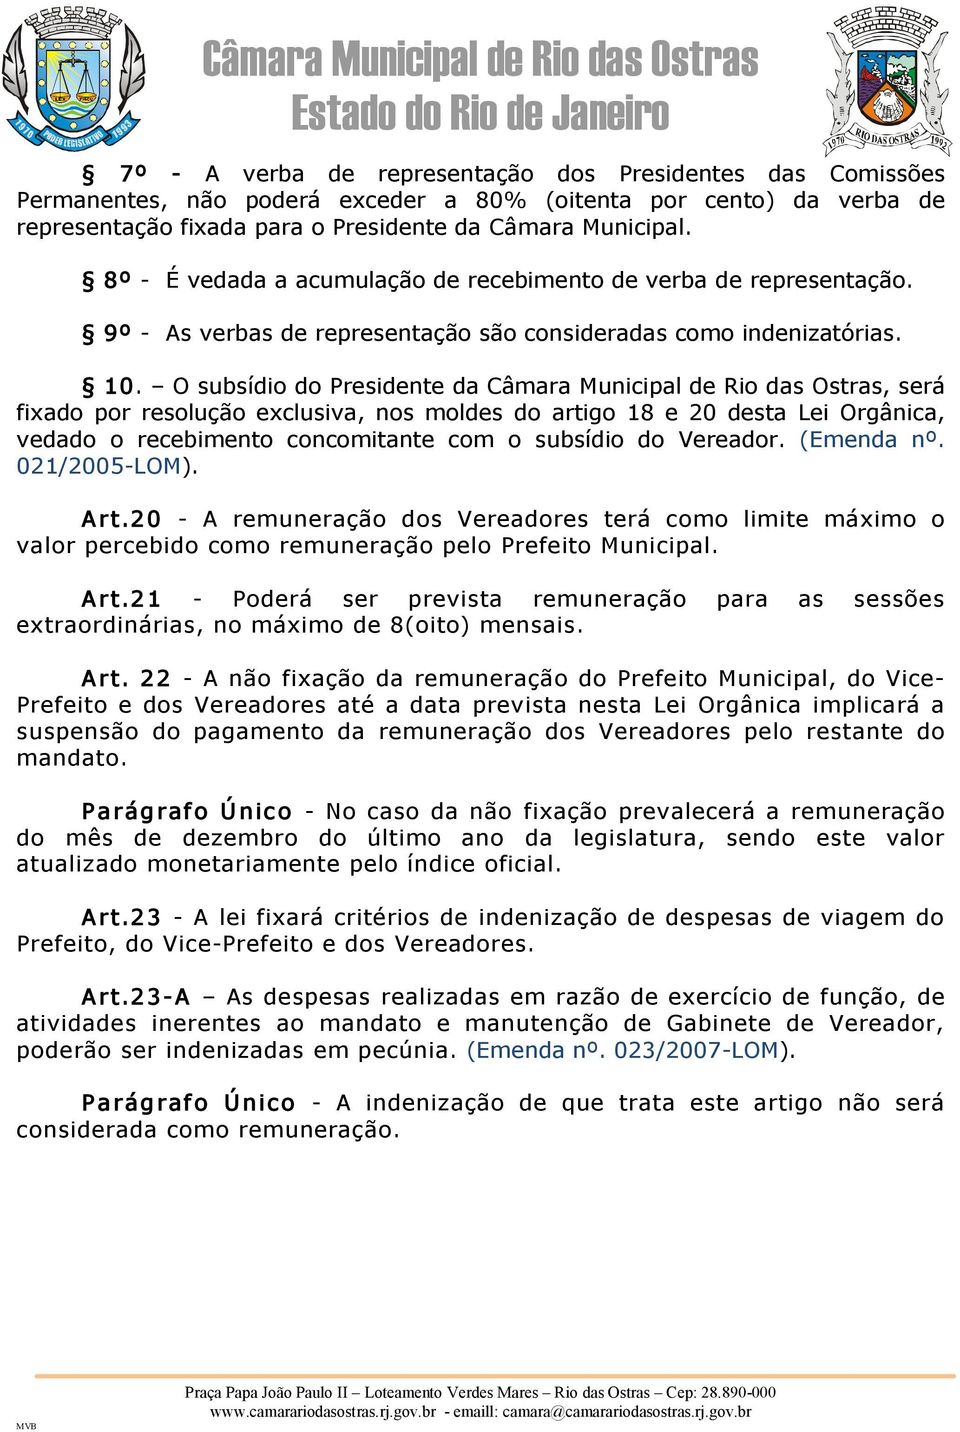 O subsídio do Presidente da Câmara Municipal de Rio das Ostras, será fixado por resolução exclusiva, nos moldes do artigo 18 e 20 desta Lei Orgânica, vedado o recebimento concomitante com o subsídio